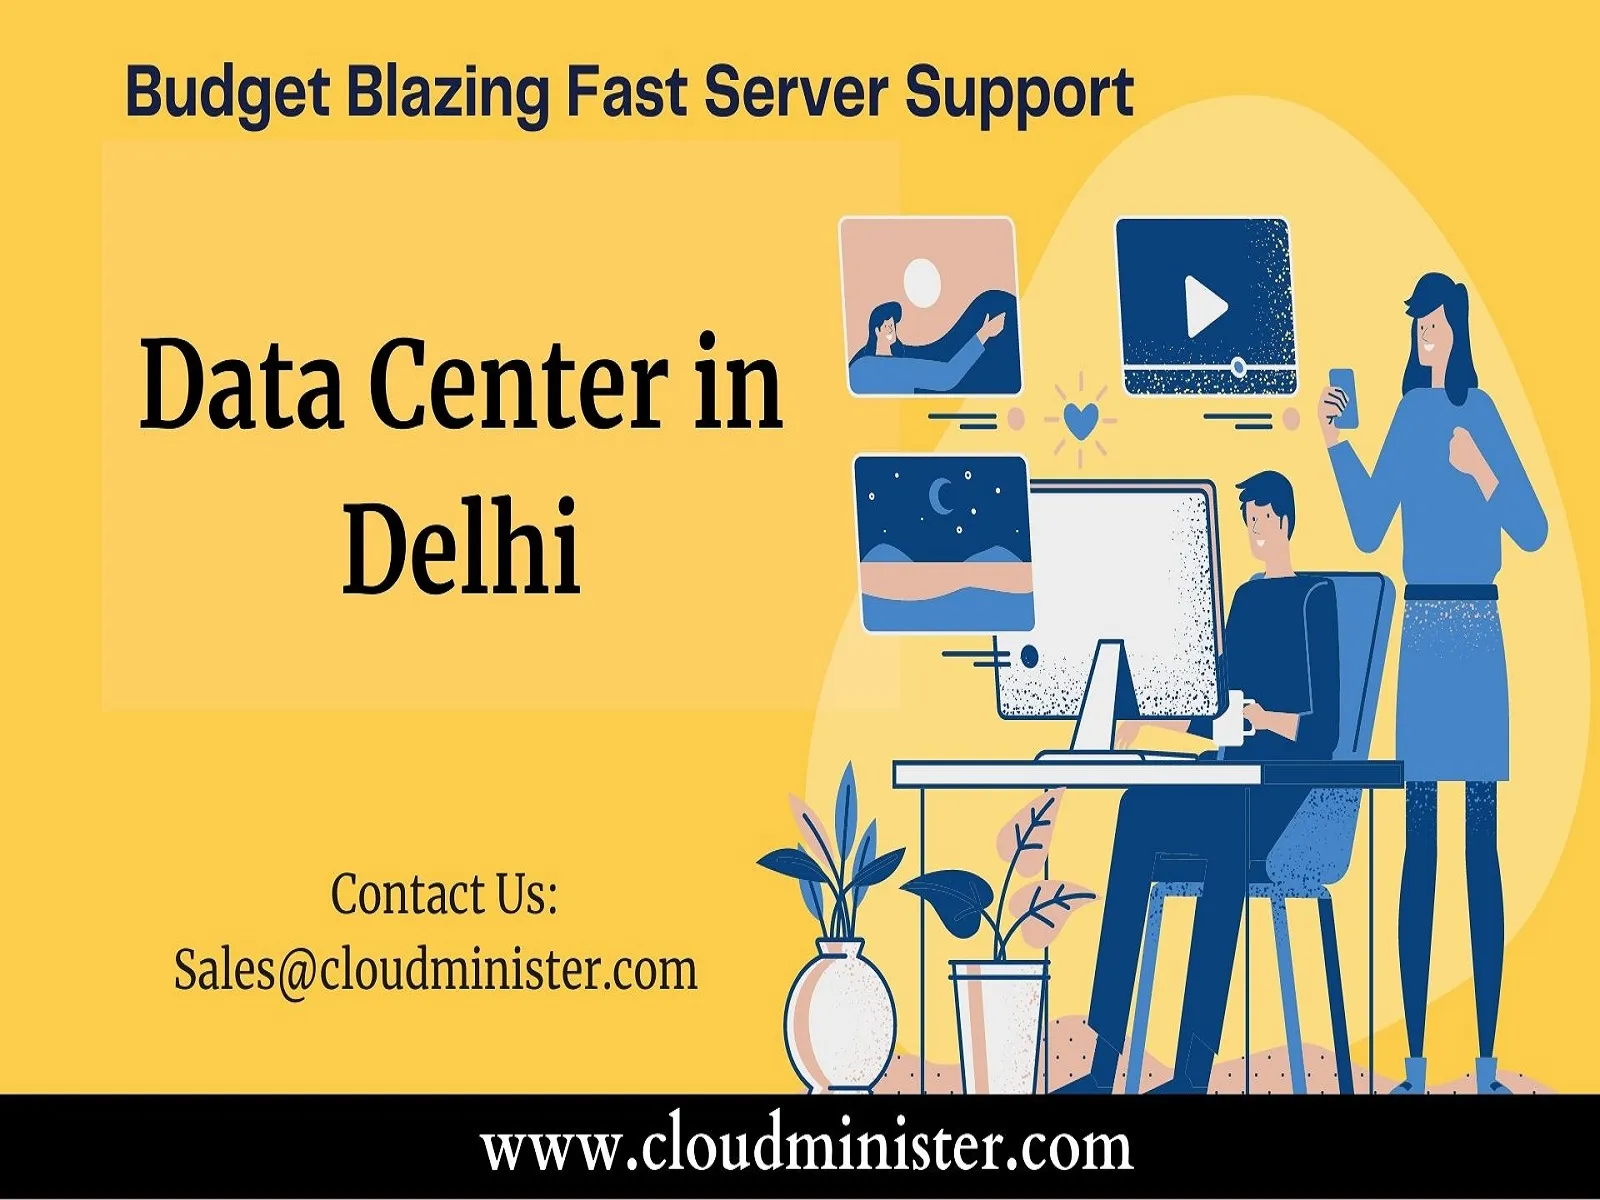 Data Center in Delhi